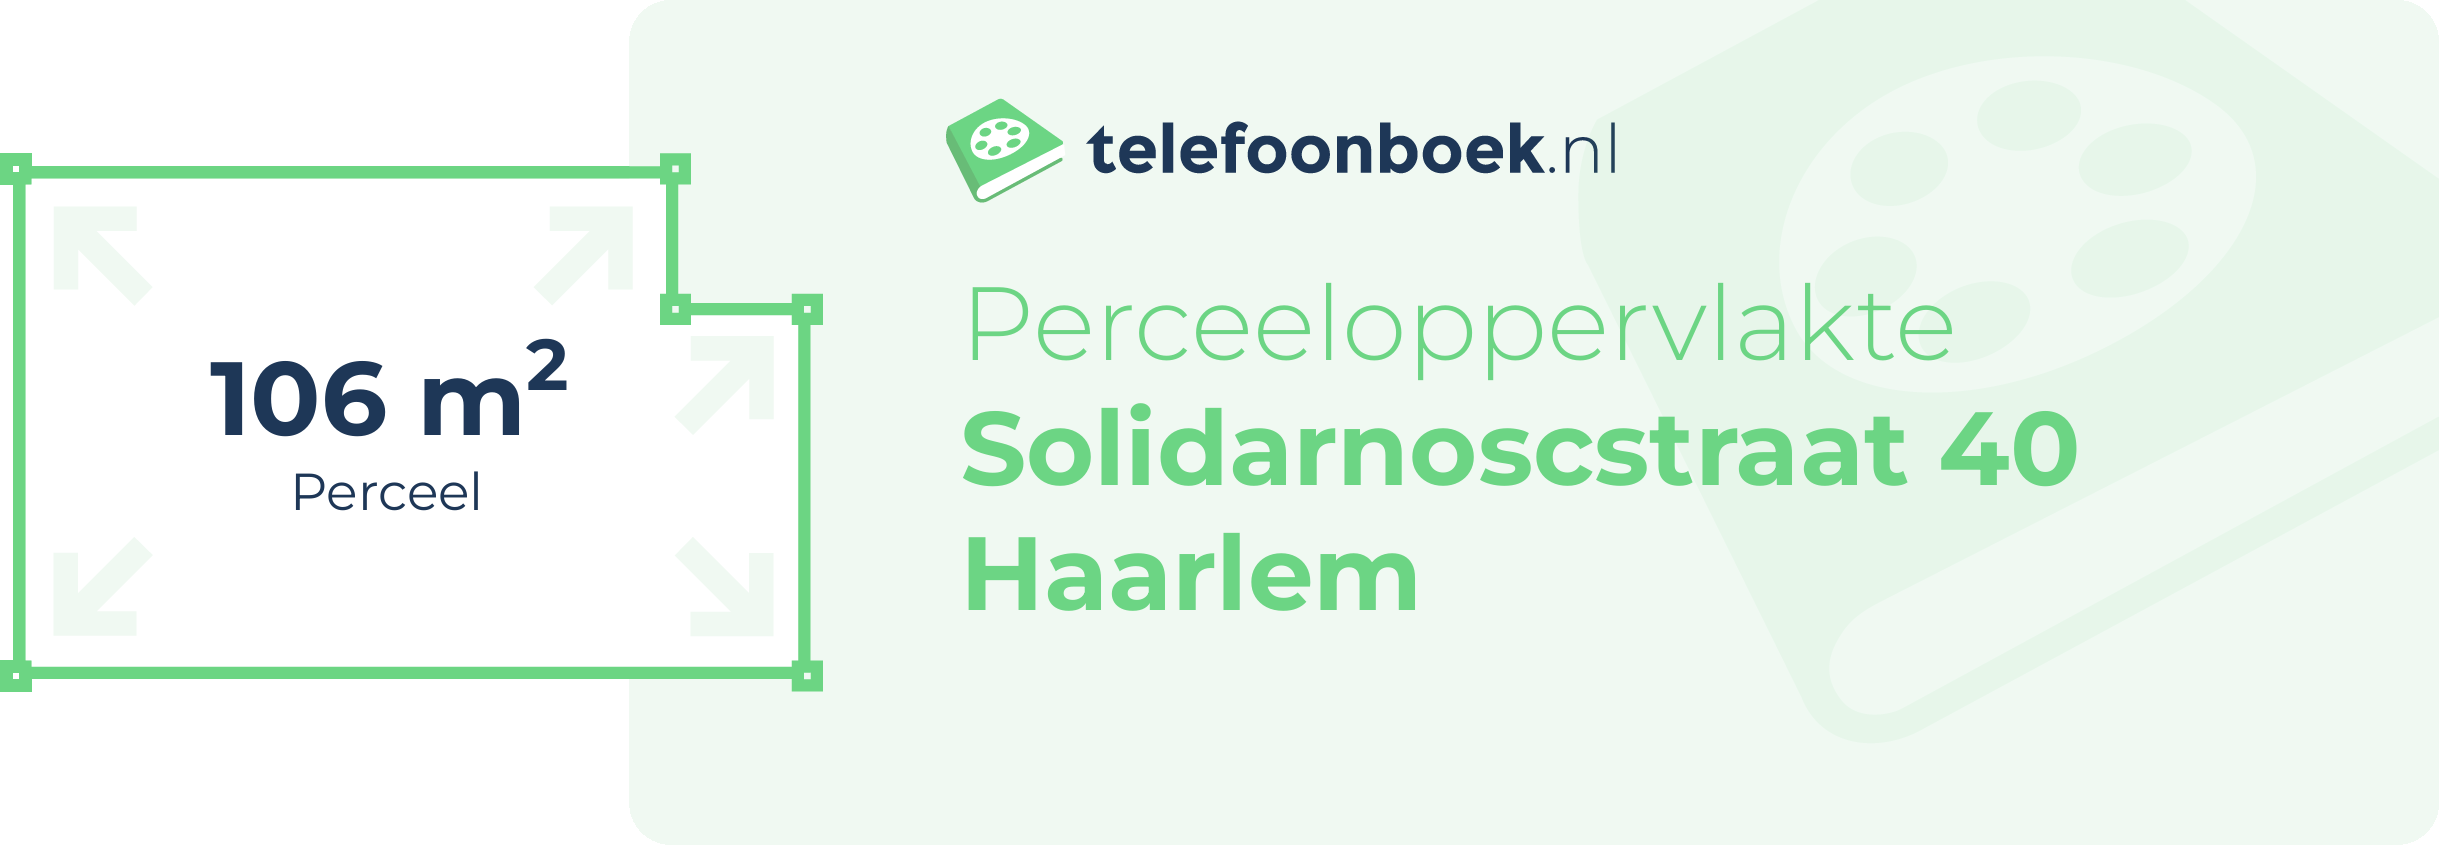 Perceeloppervlakte Solidarnoscstraat 40 Haarlem